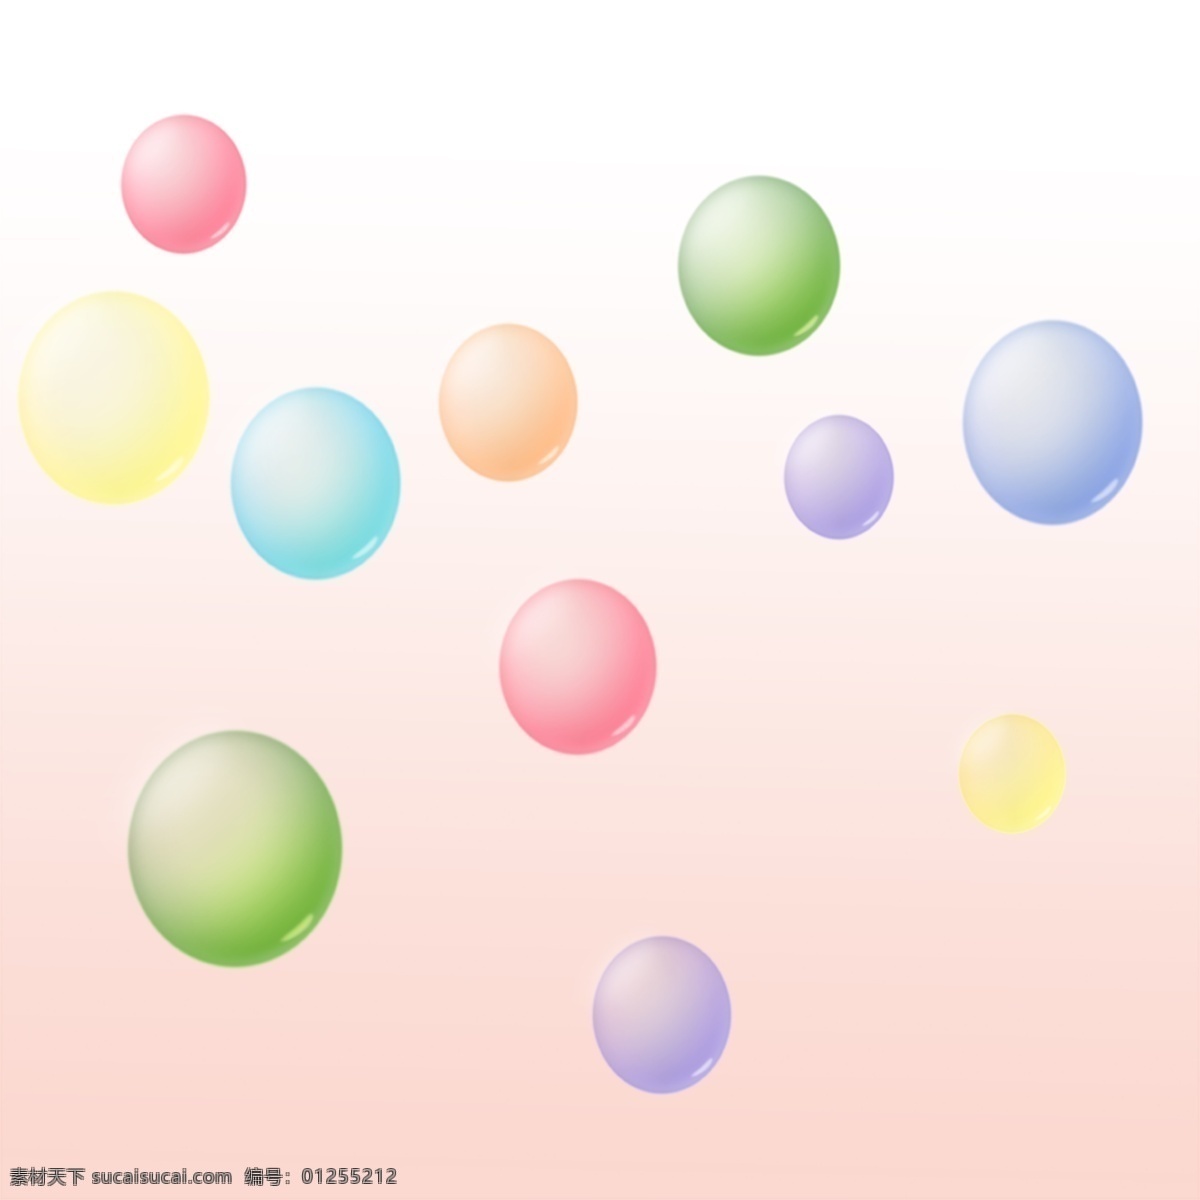 七色球 球 水晶球 玻璃球 彩色球 透明